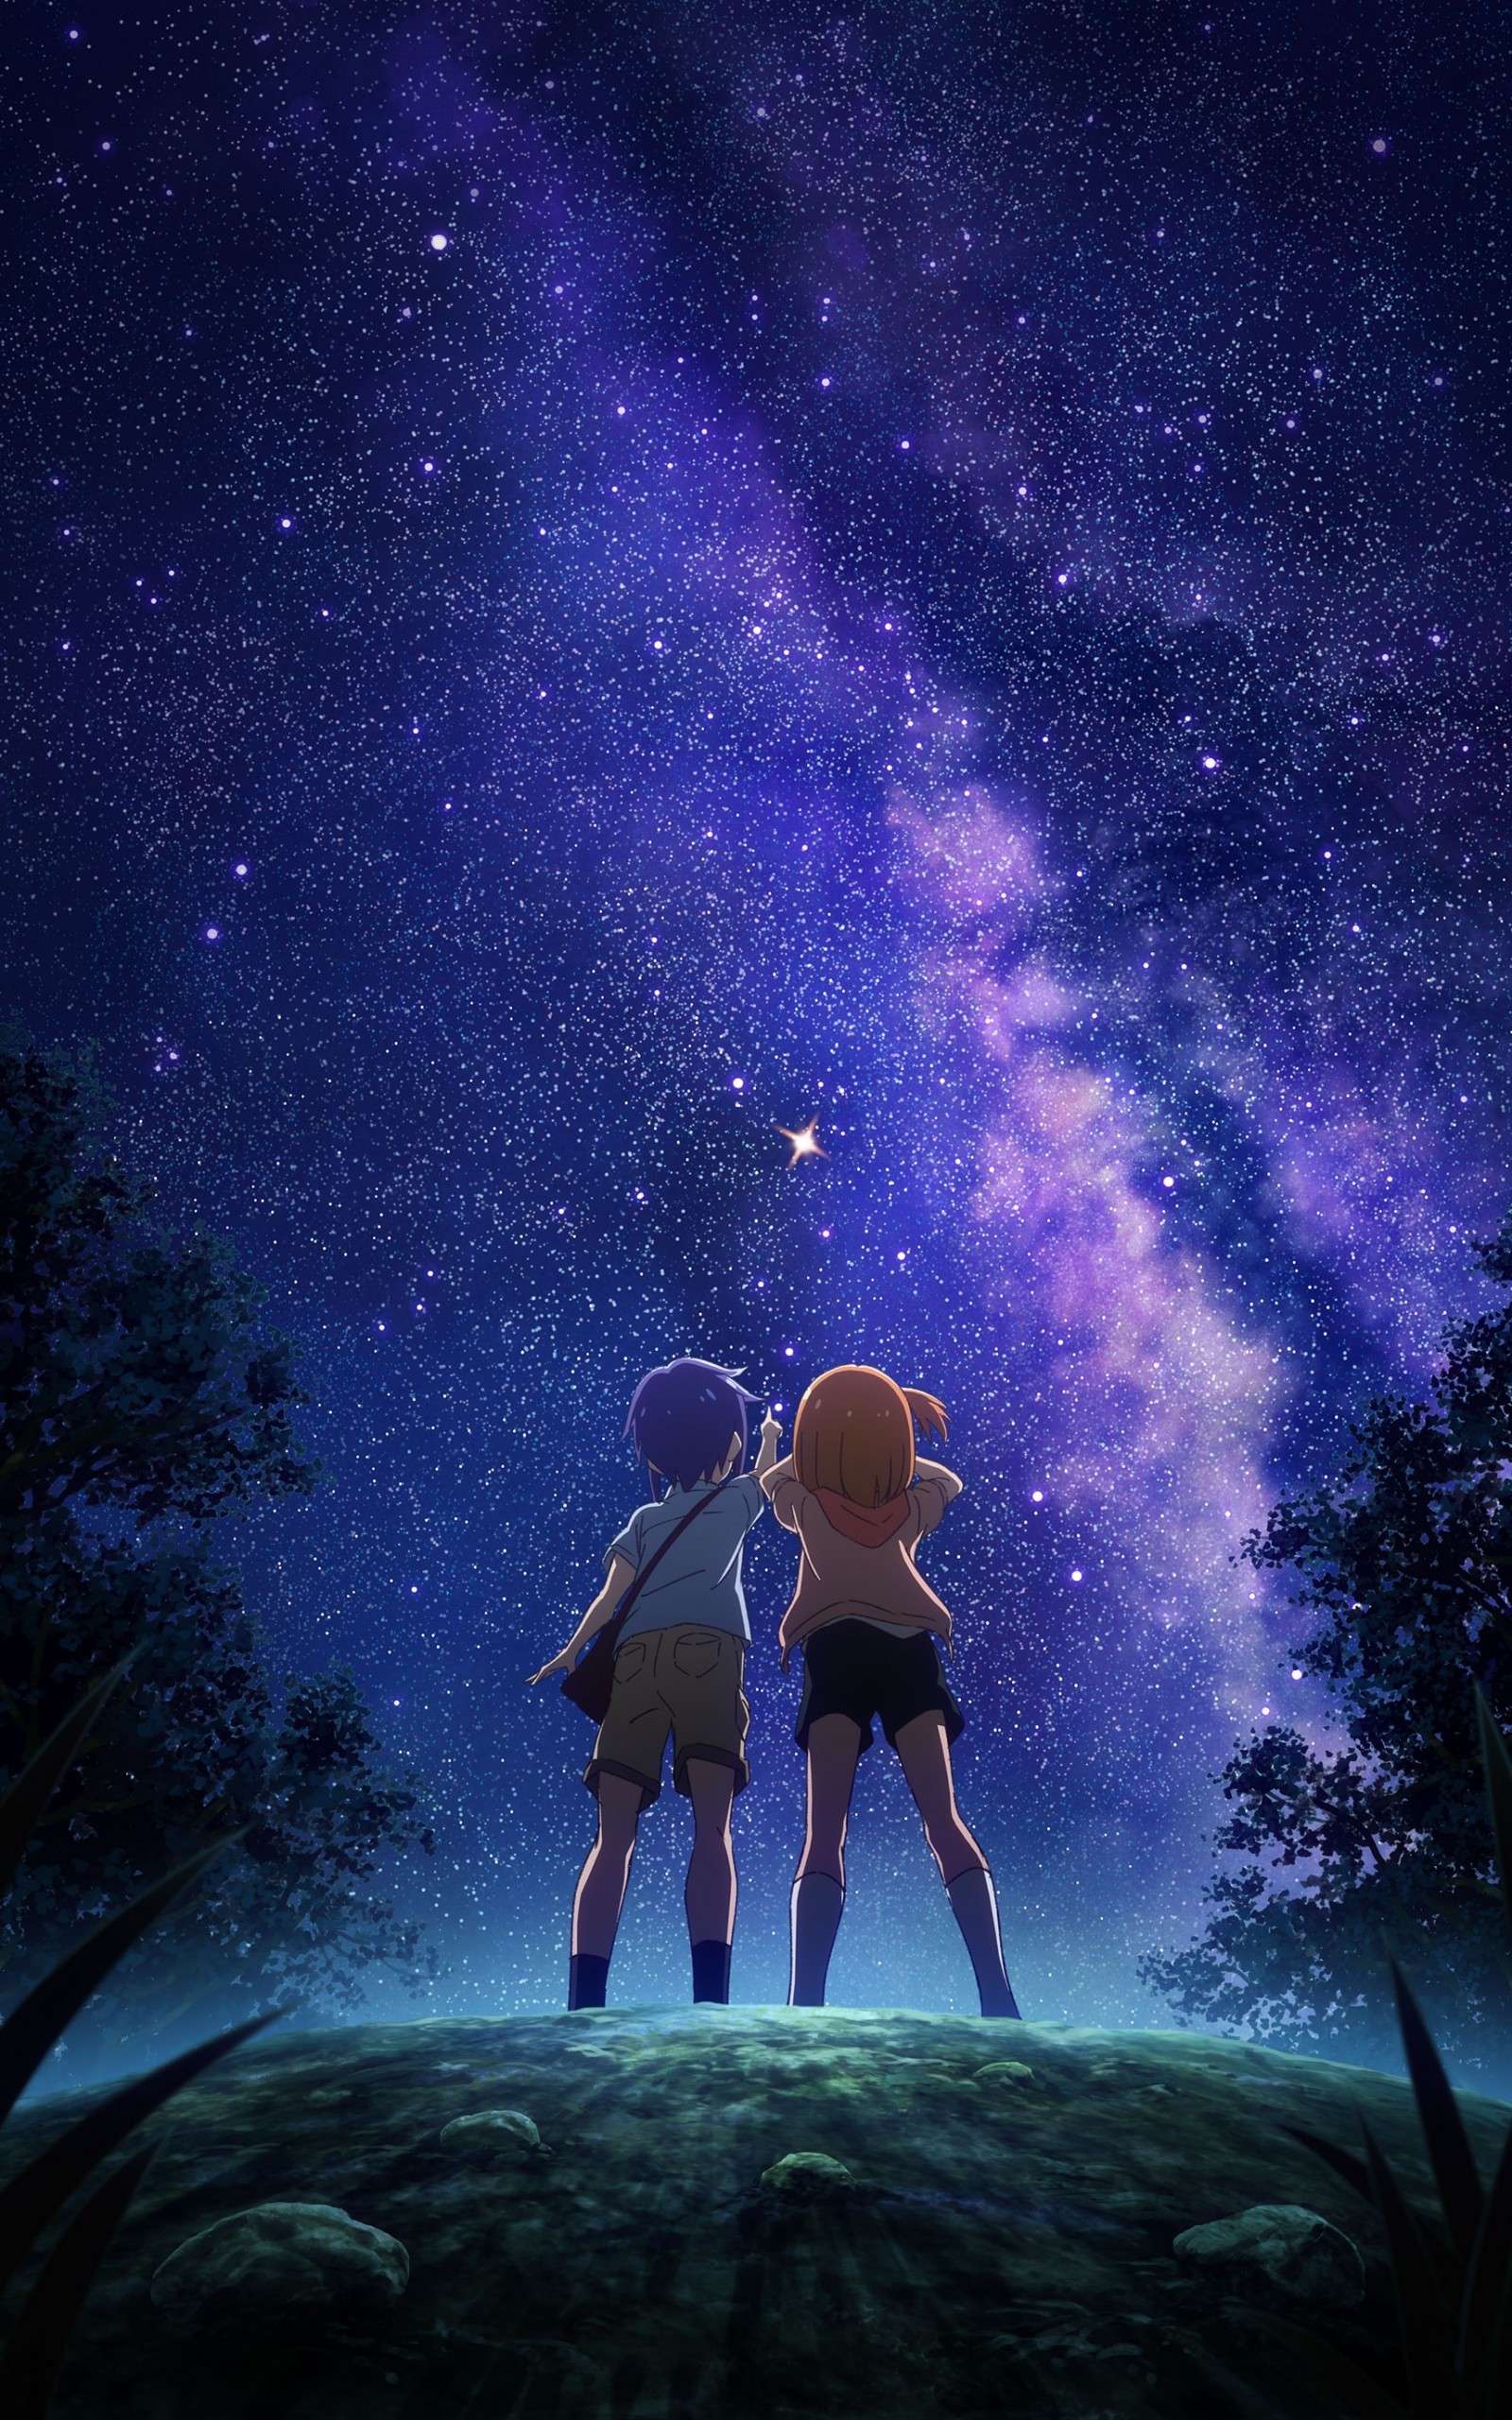 Anime Night Sky